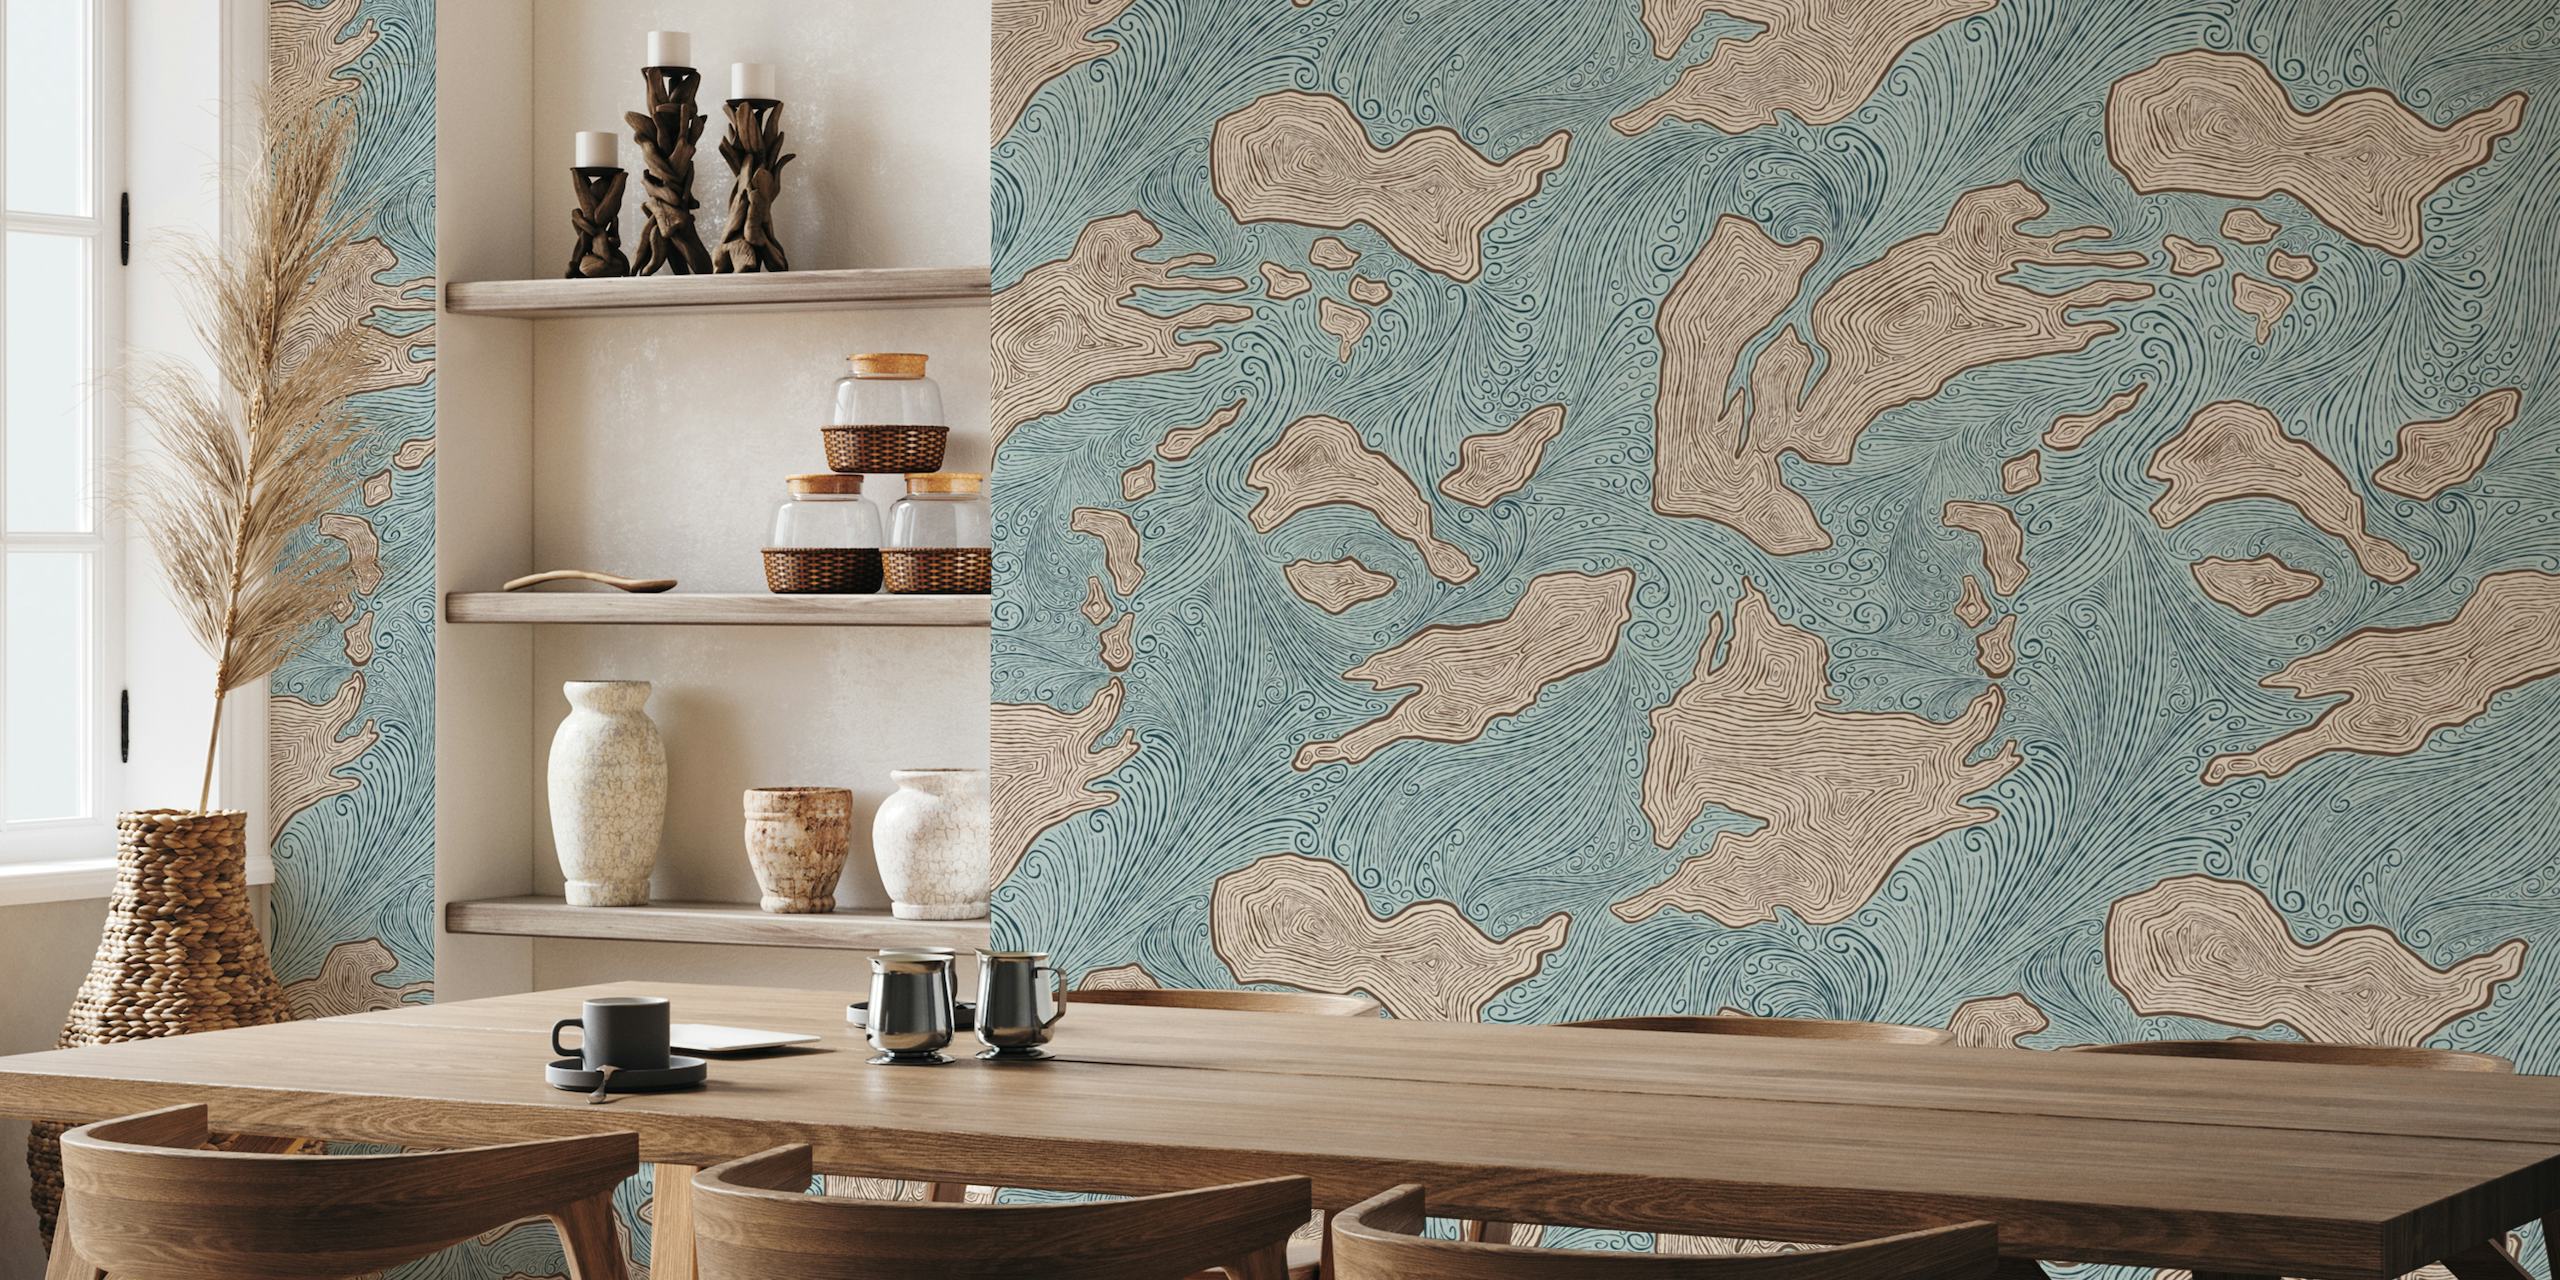 Papier peint mural abstrait en forme de formes d'îles dans des tons bleus et terre apaisants nommé « Îles inconnues ».